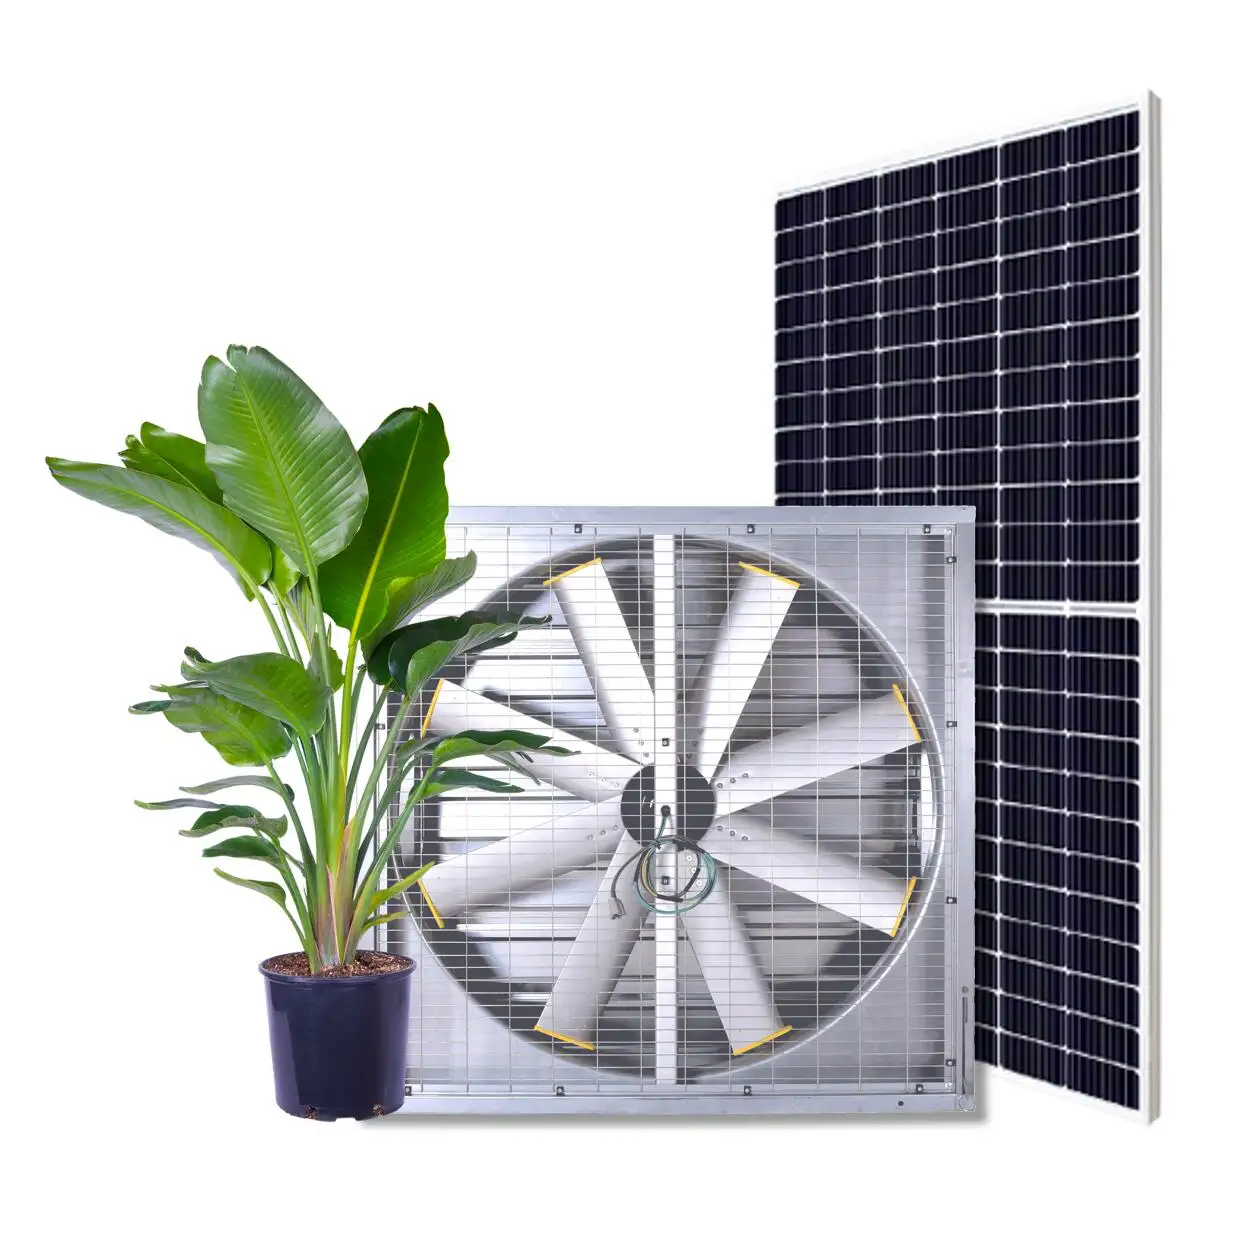 Ventilateur de ventilation solaire de serre vertical 48 pouces, ventilateur d'extraction agricole, ventilateur de circulation d'air mural étanche pour serre